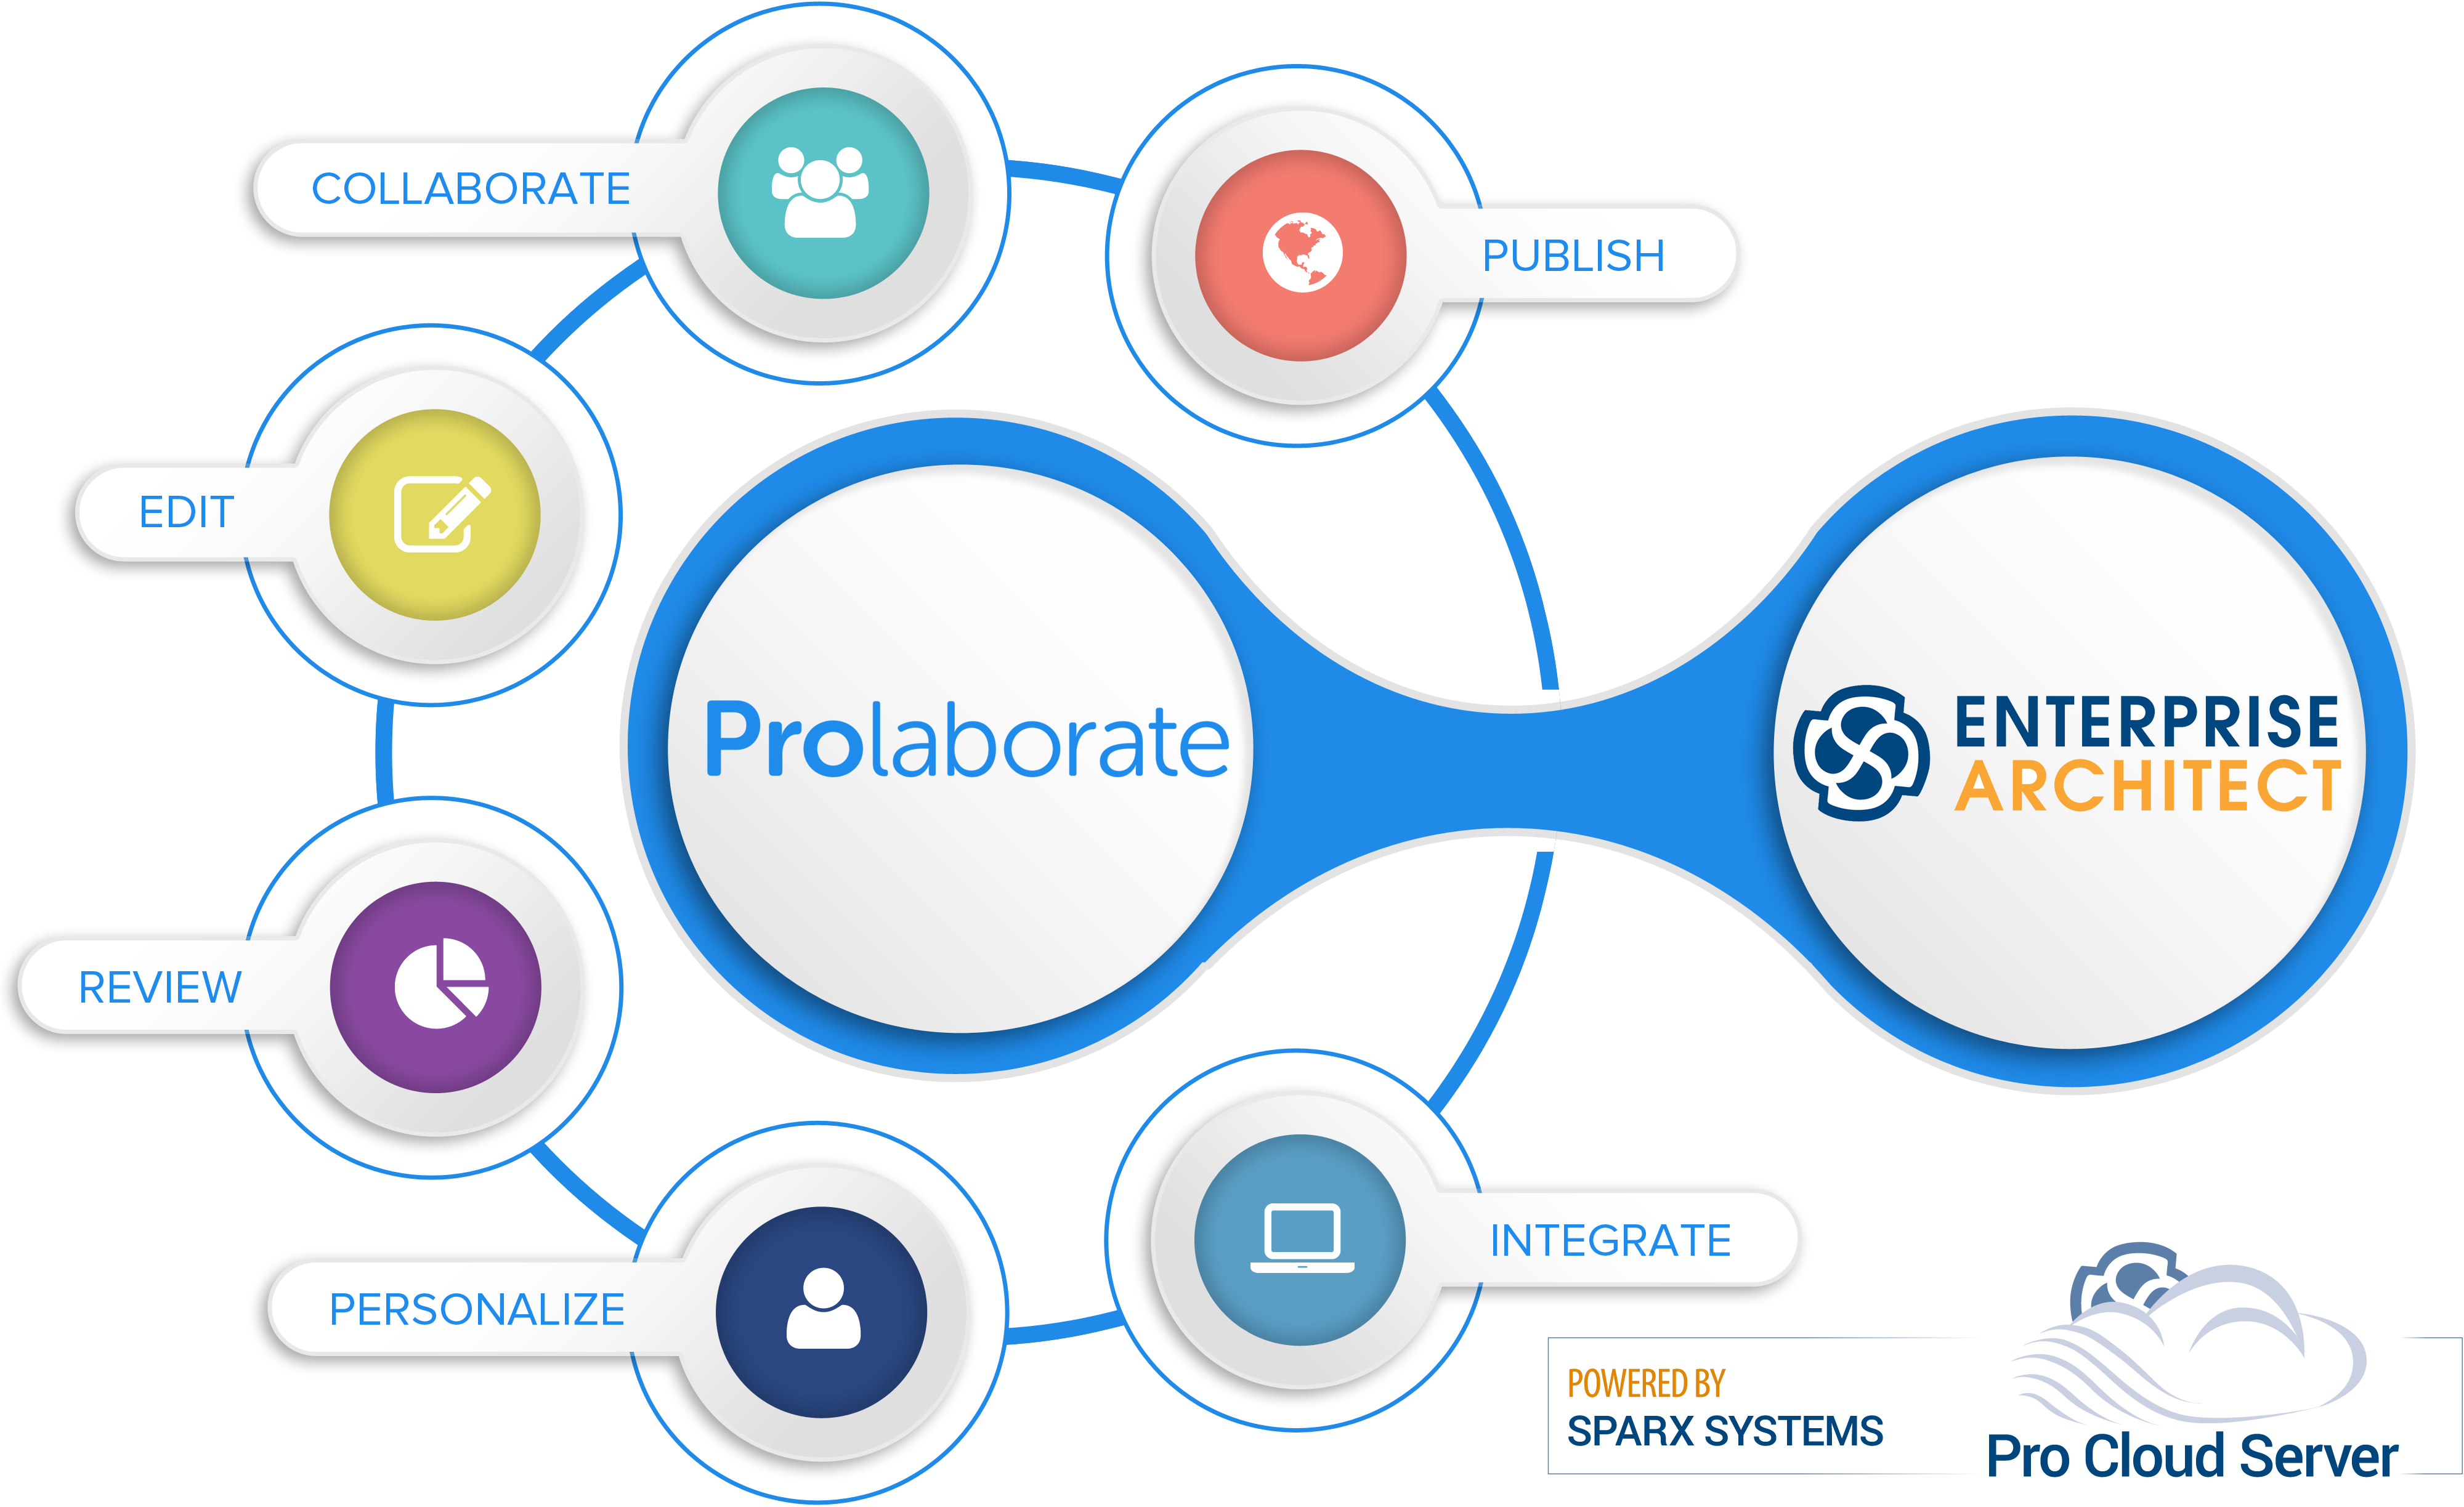 Prolaborate